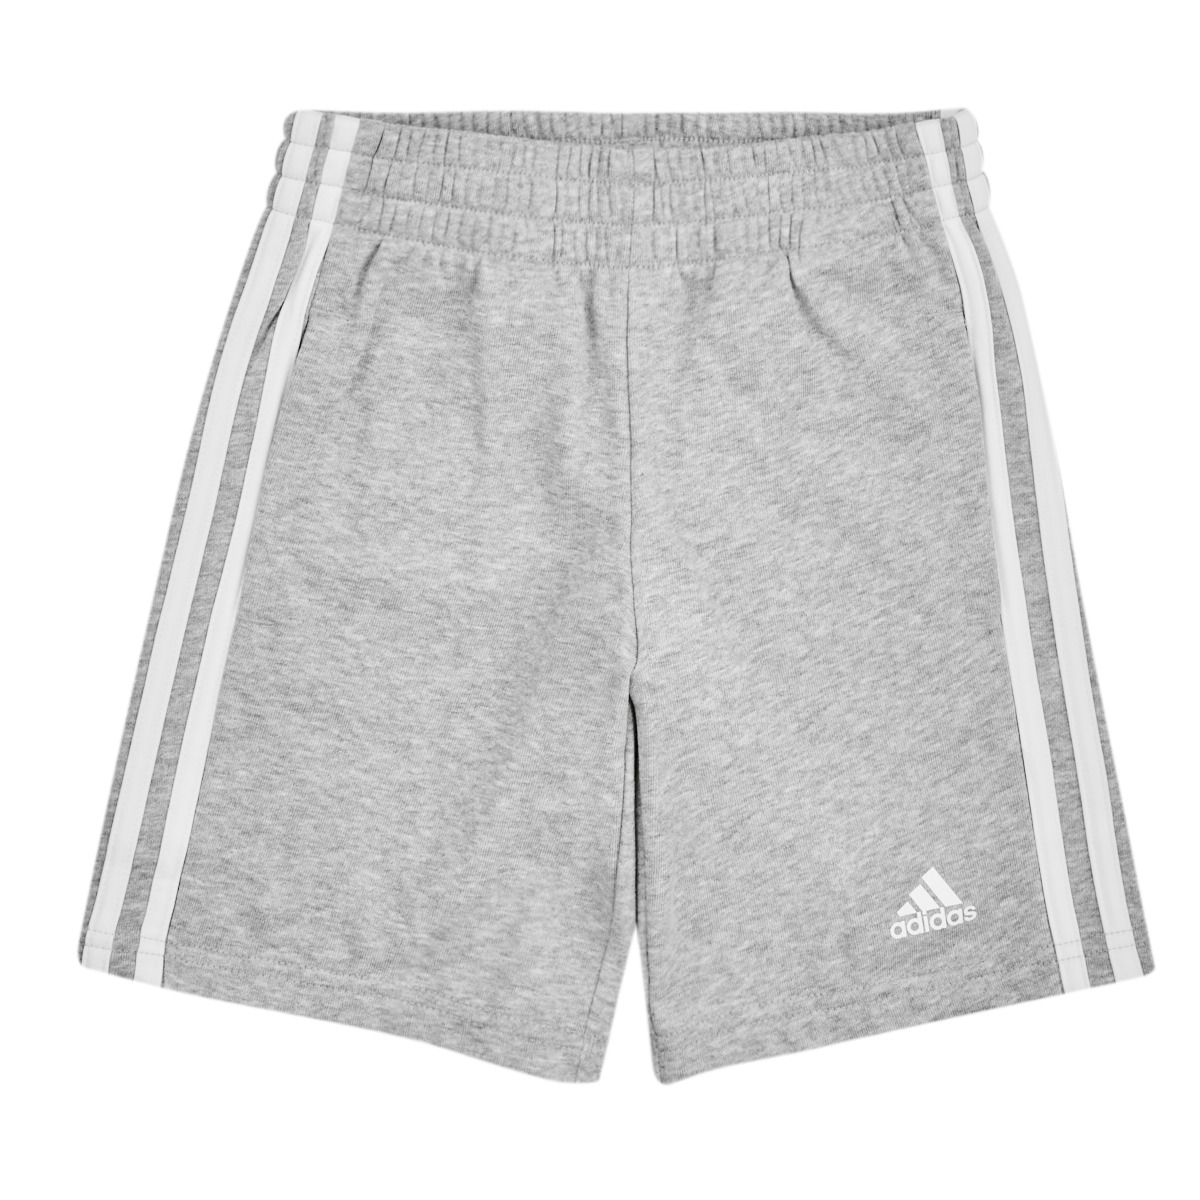 Odjeća Djeca Bermude i kratke hlače Adidas Sportswear LK 3S SHOR Siva / Bijela